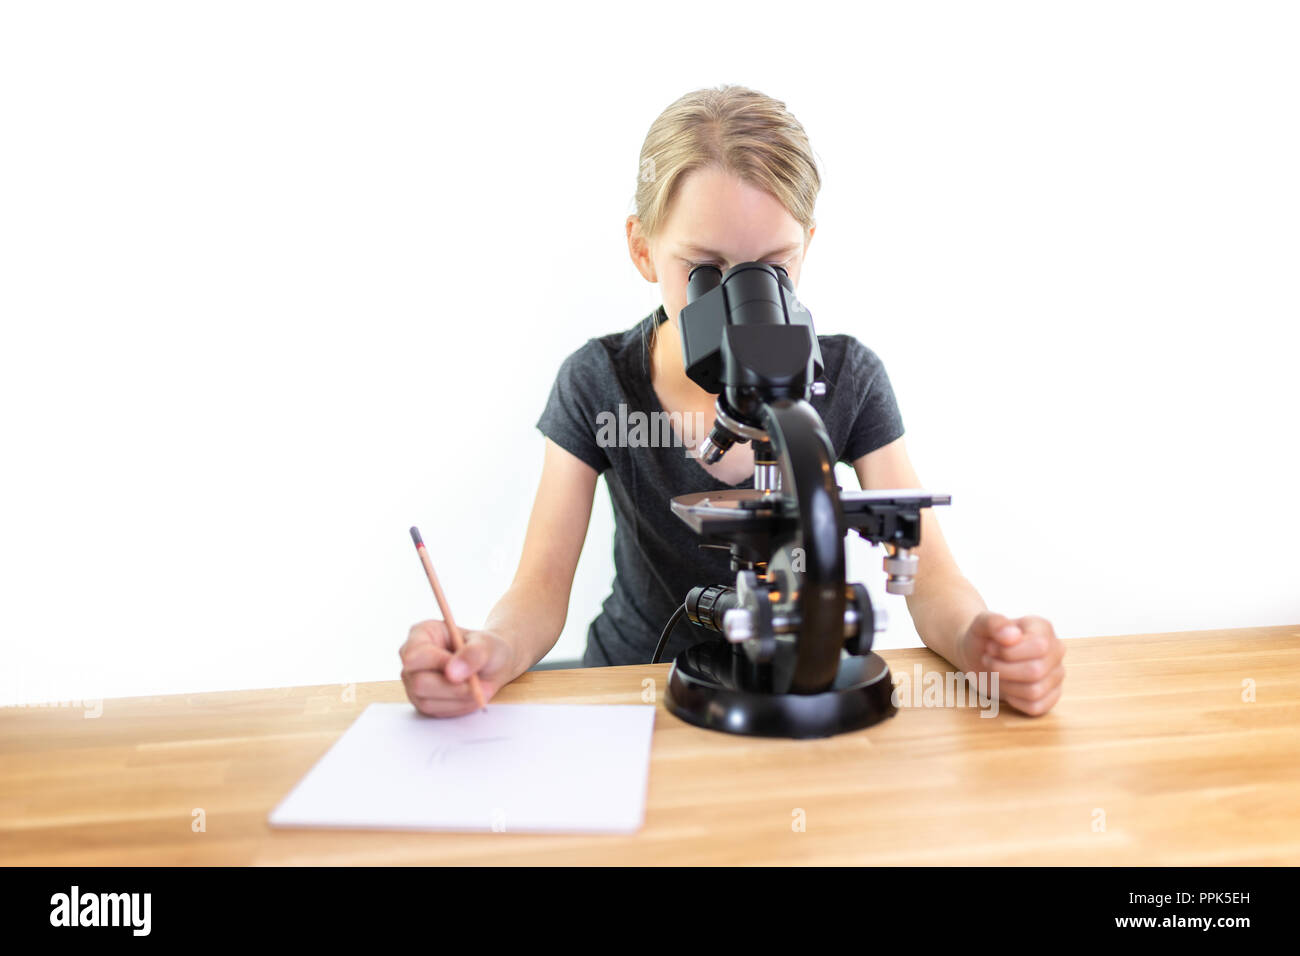 Une petite fille de 9 ans cherche dans un oculaire d'un microscope et note ses observations sur une feuille de papier. Contre isolé sur fond blanc Banque D'Images